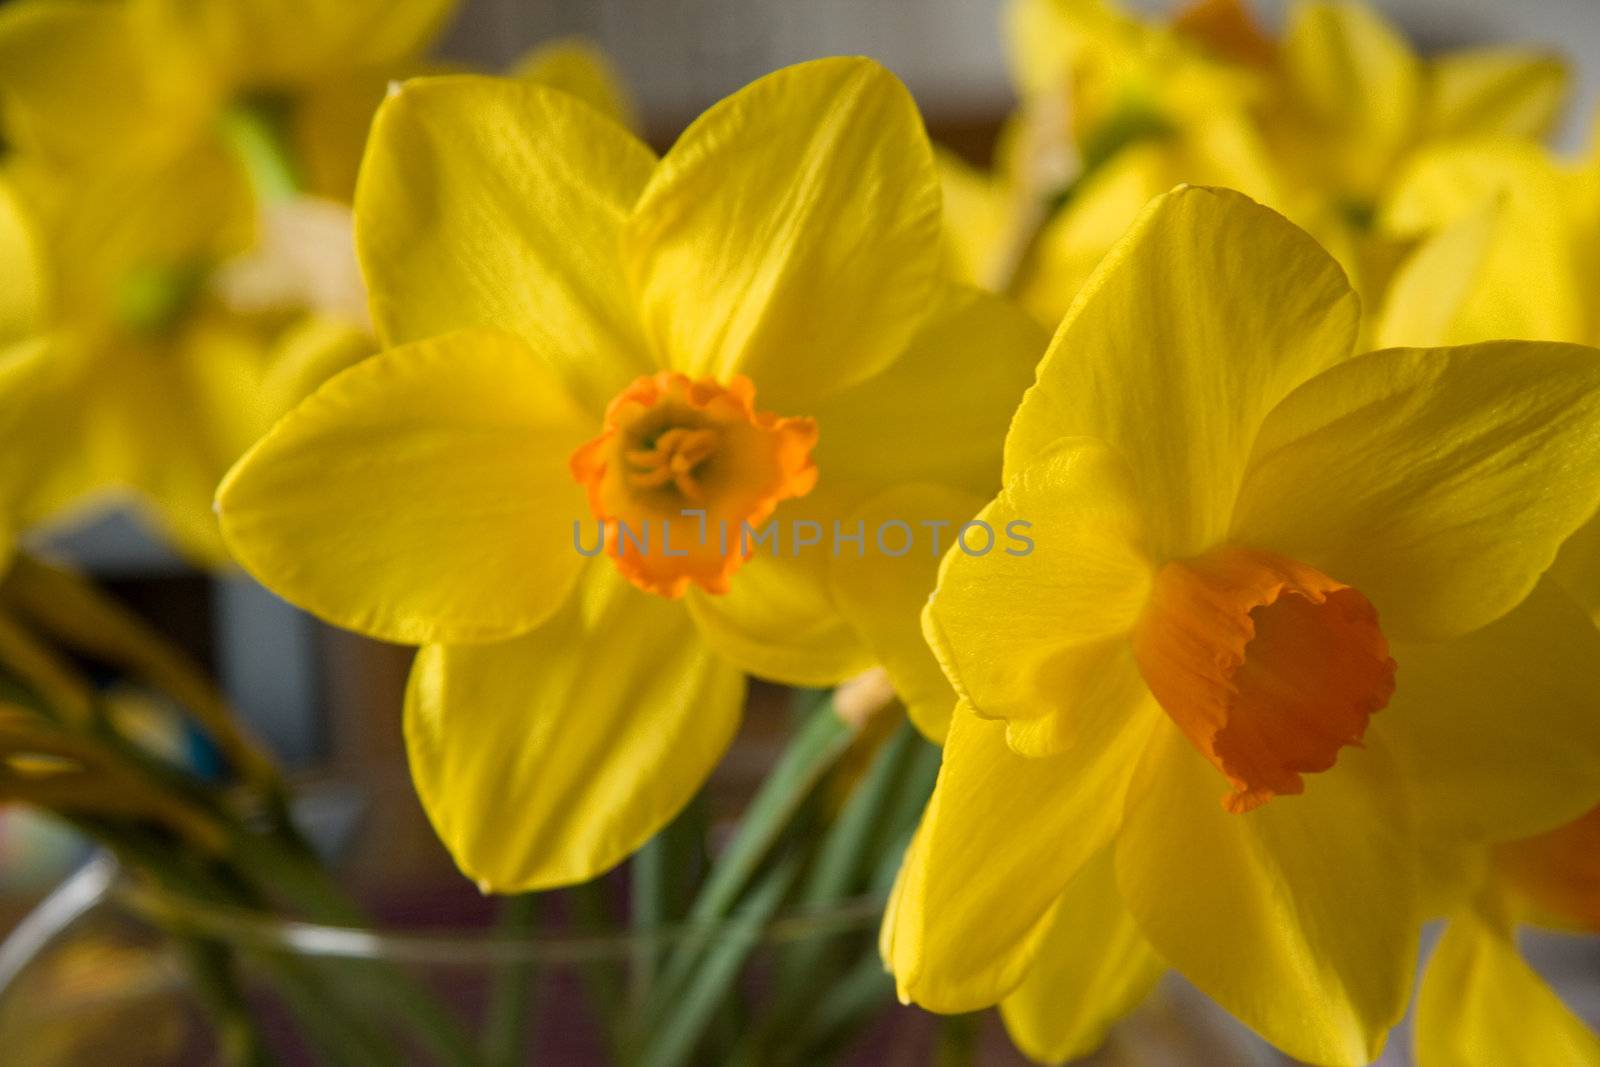 daffodils by hildurbjorg